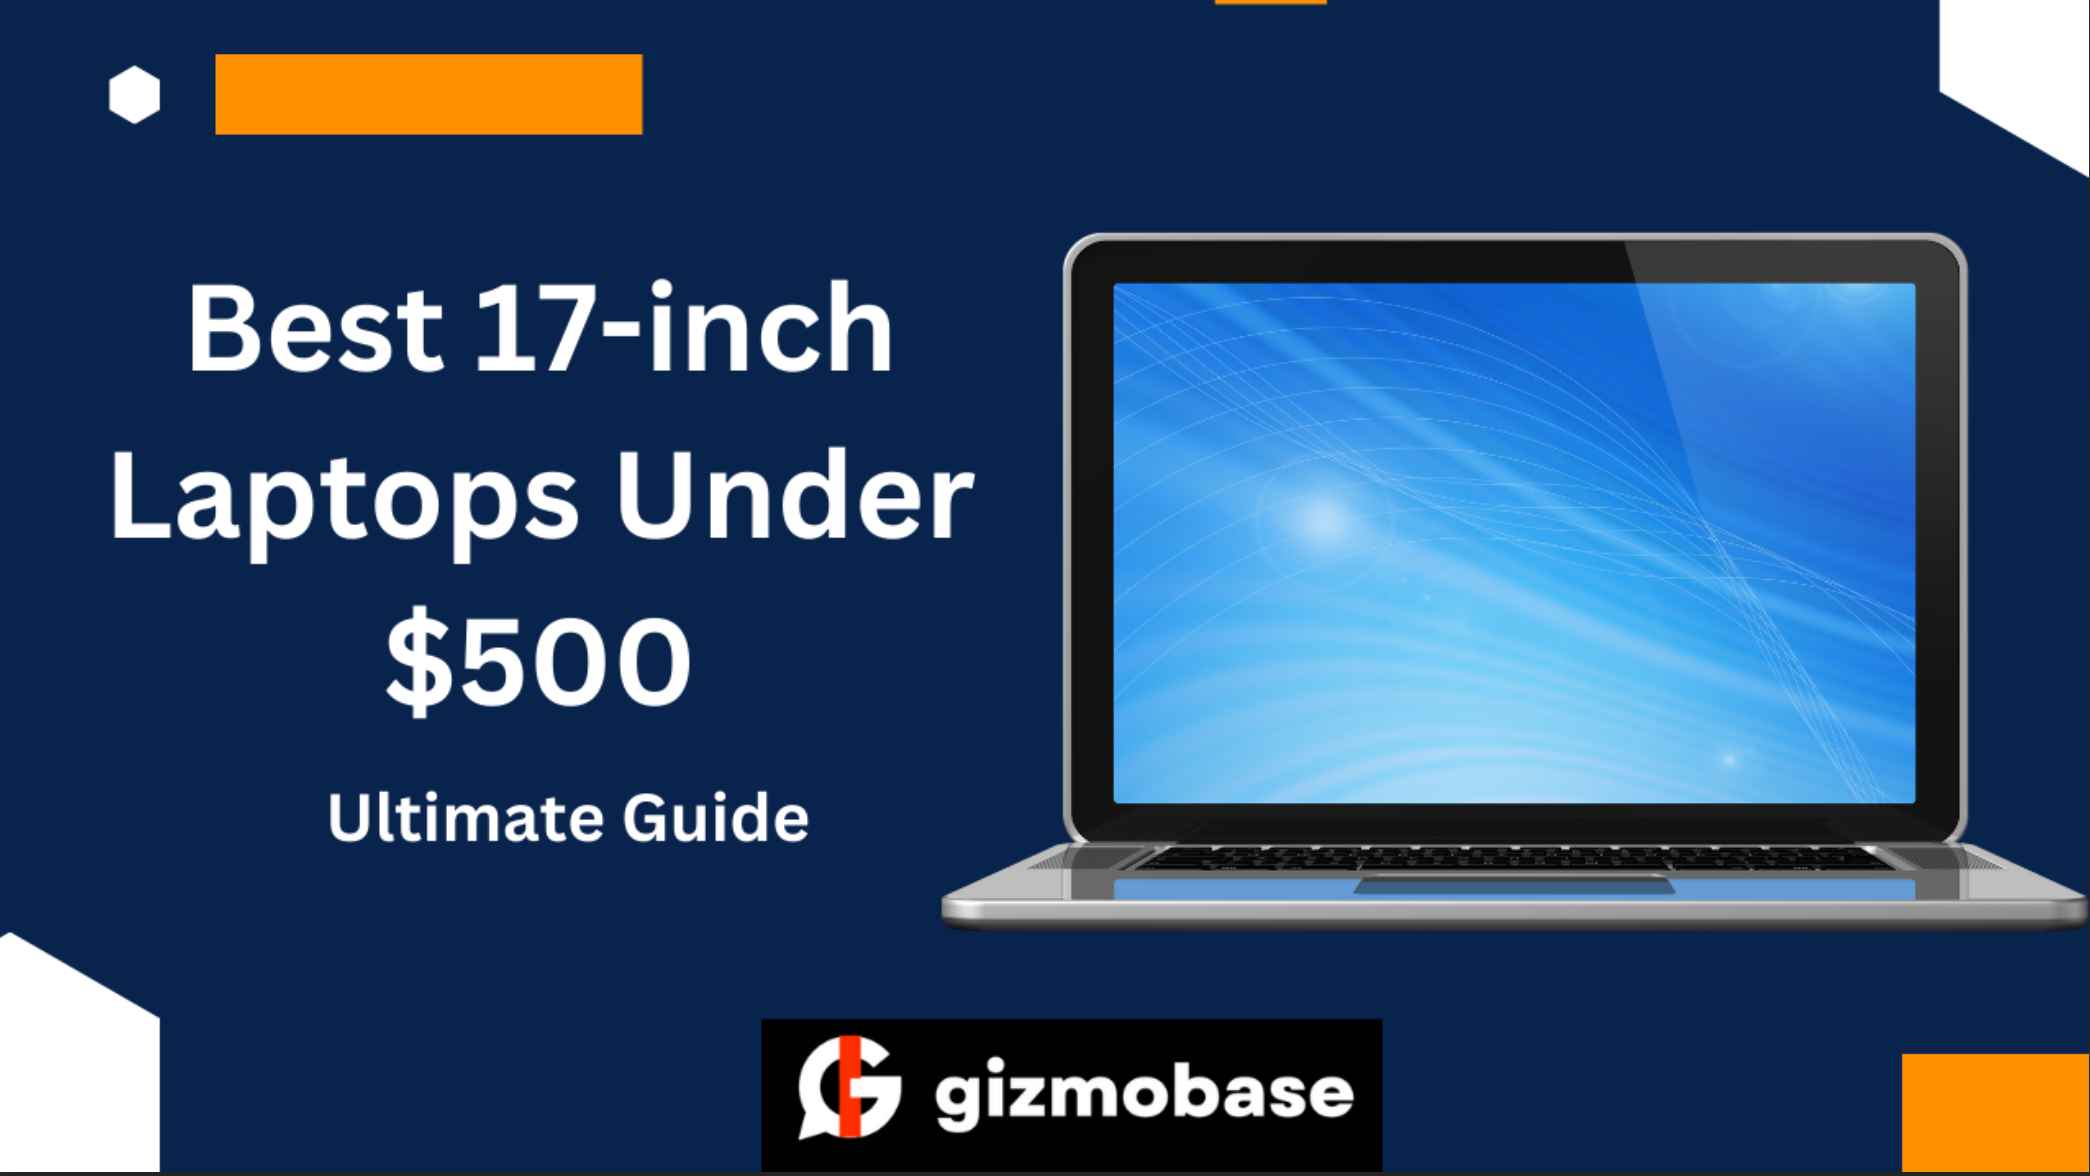 Best 17-inch Laptops Under $500